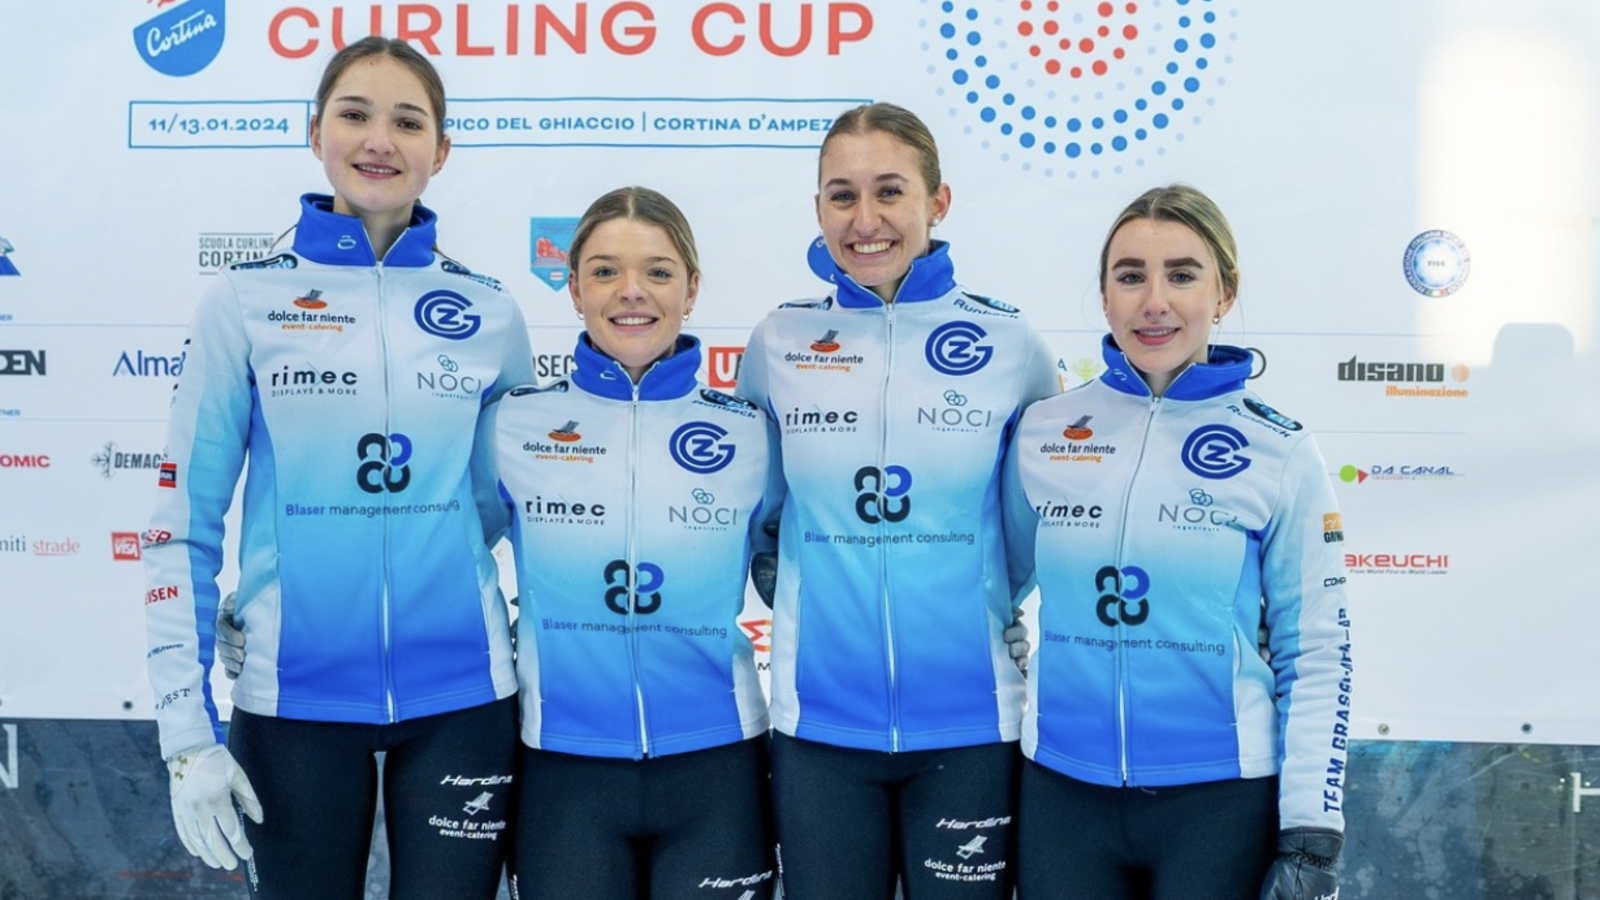 Team GC am Cortina Curling Cup im Einsatz